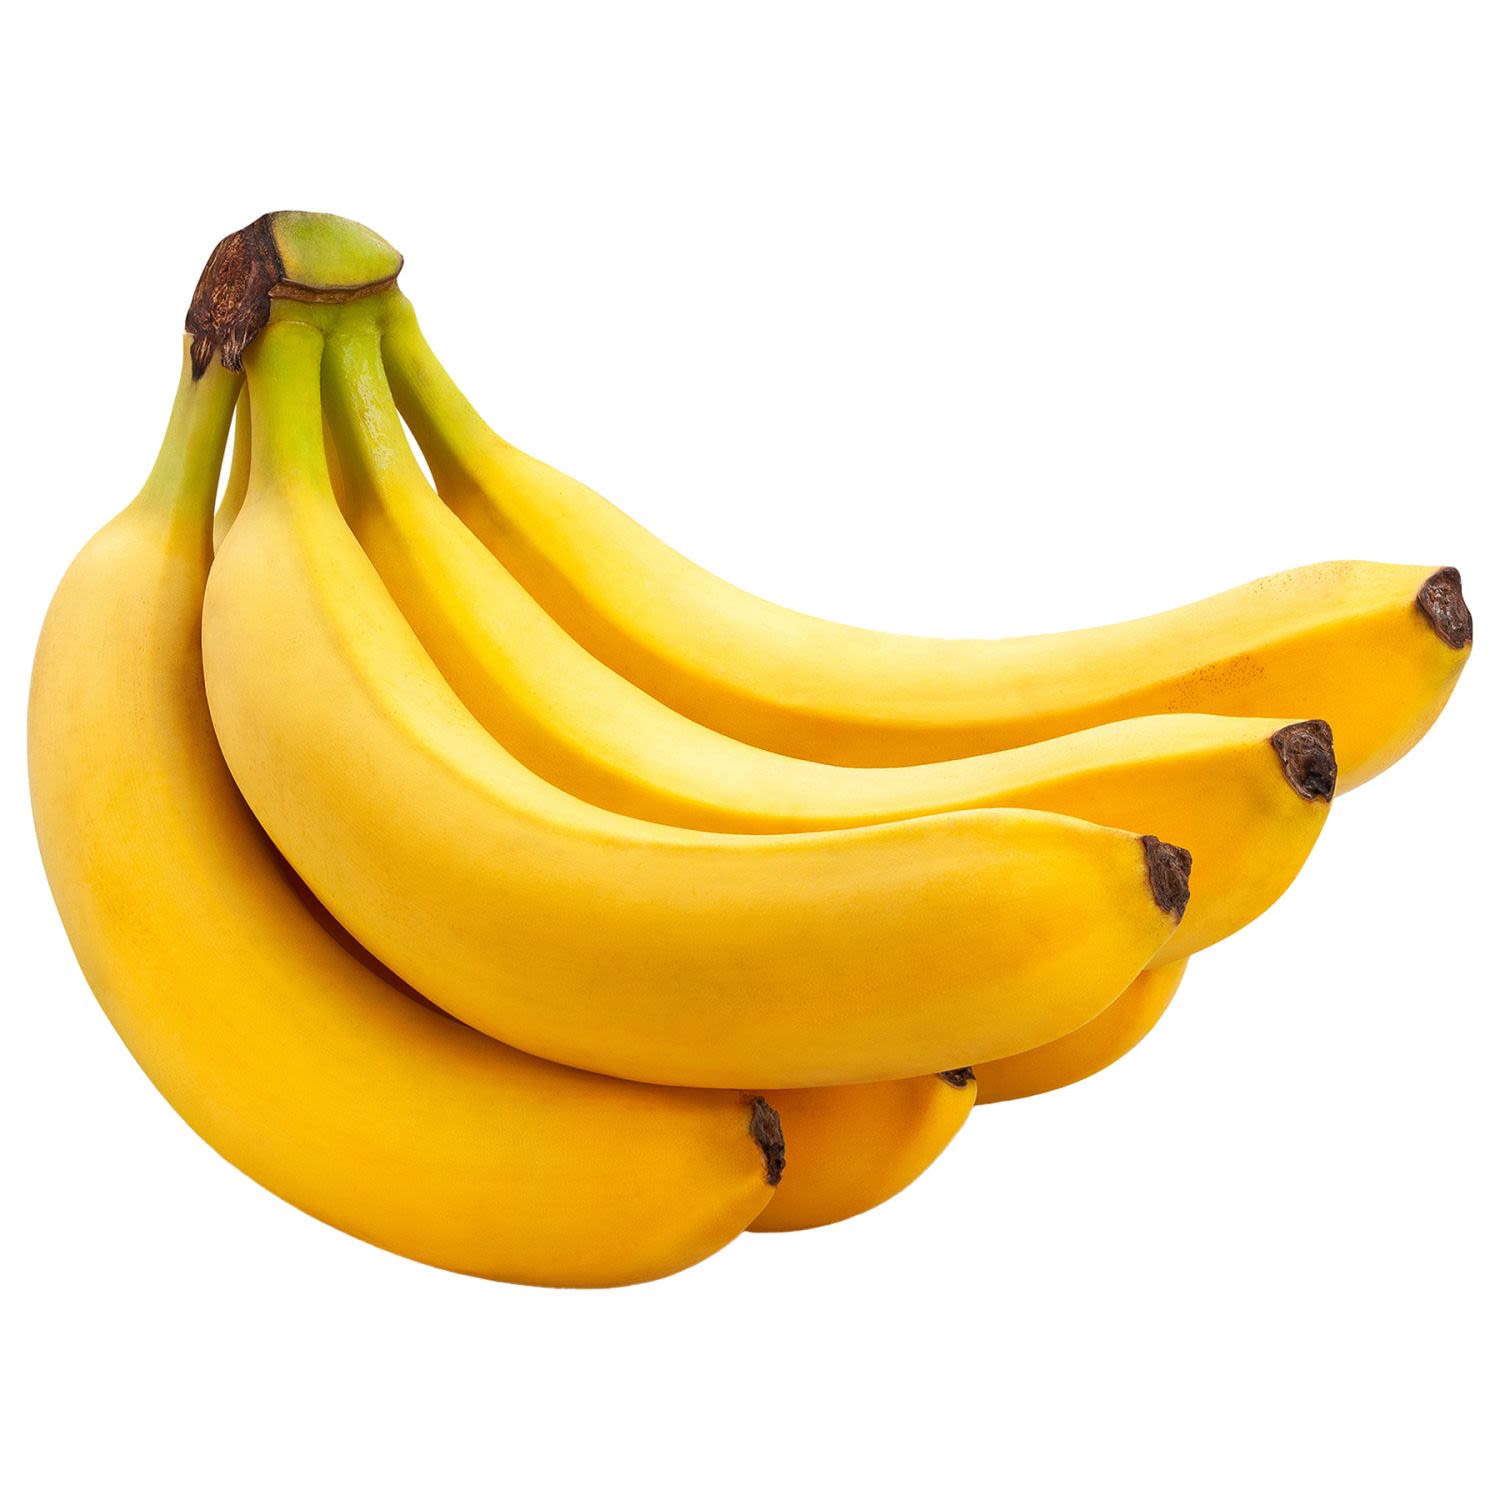 Cavendish Bananas, 180 Gram